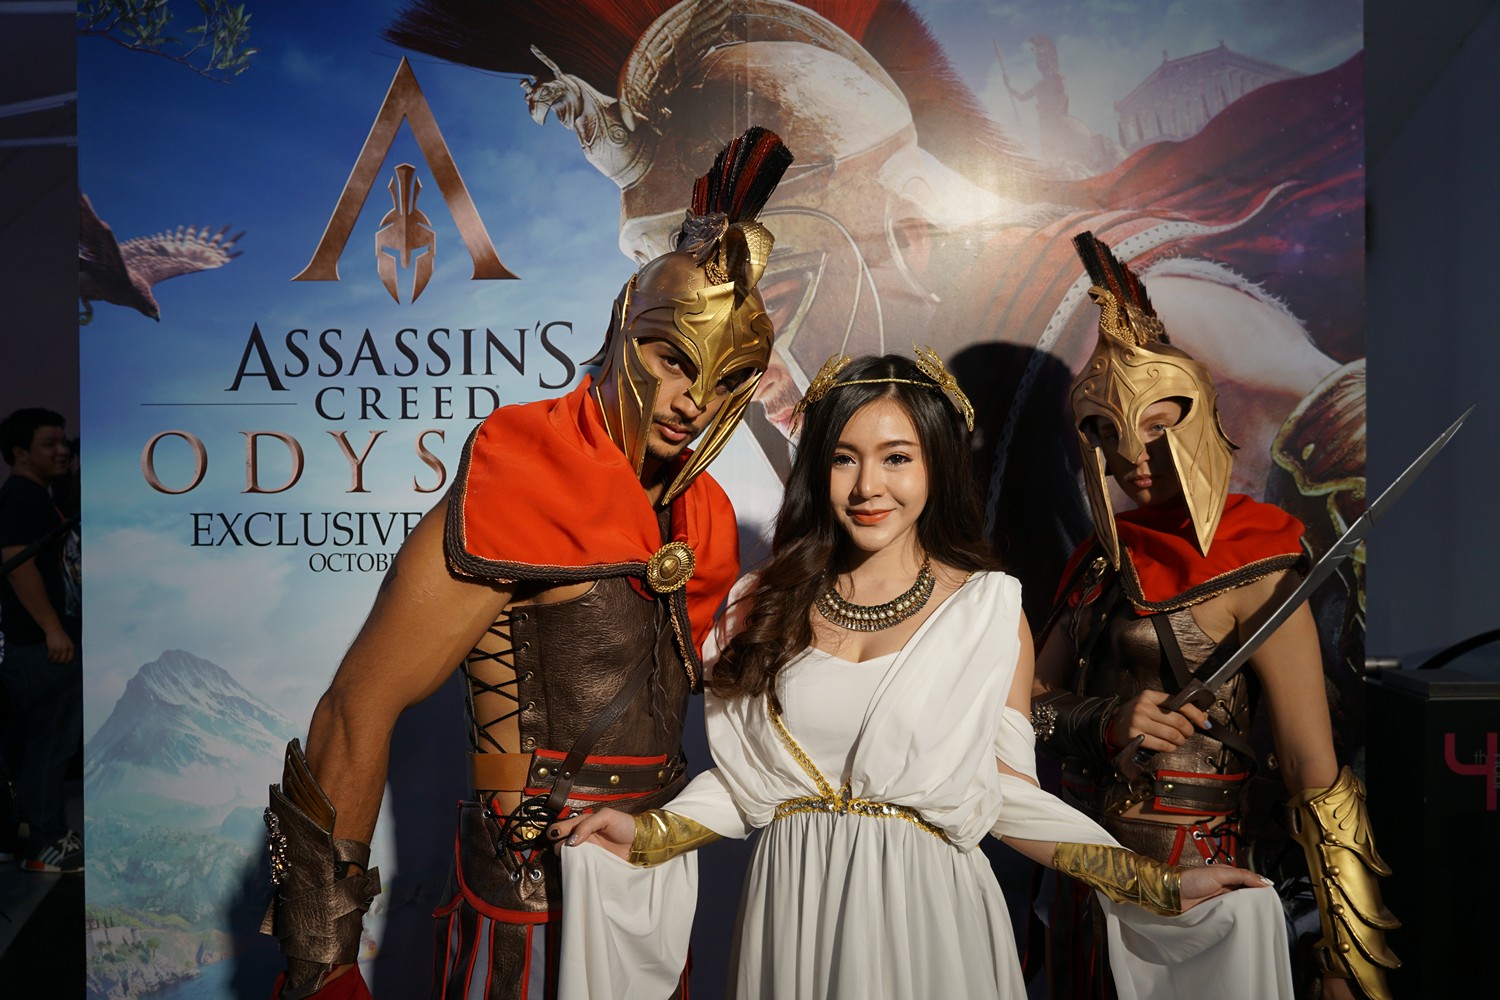 สัมภาษณ์ทีมงาน Ubisoft Assassin’s Creed odyssey พร้อมวางจำหน่ายที่ไทยแล้วก่อนใครในโลก !!